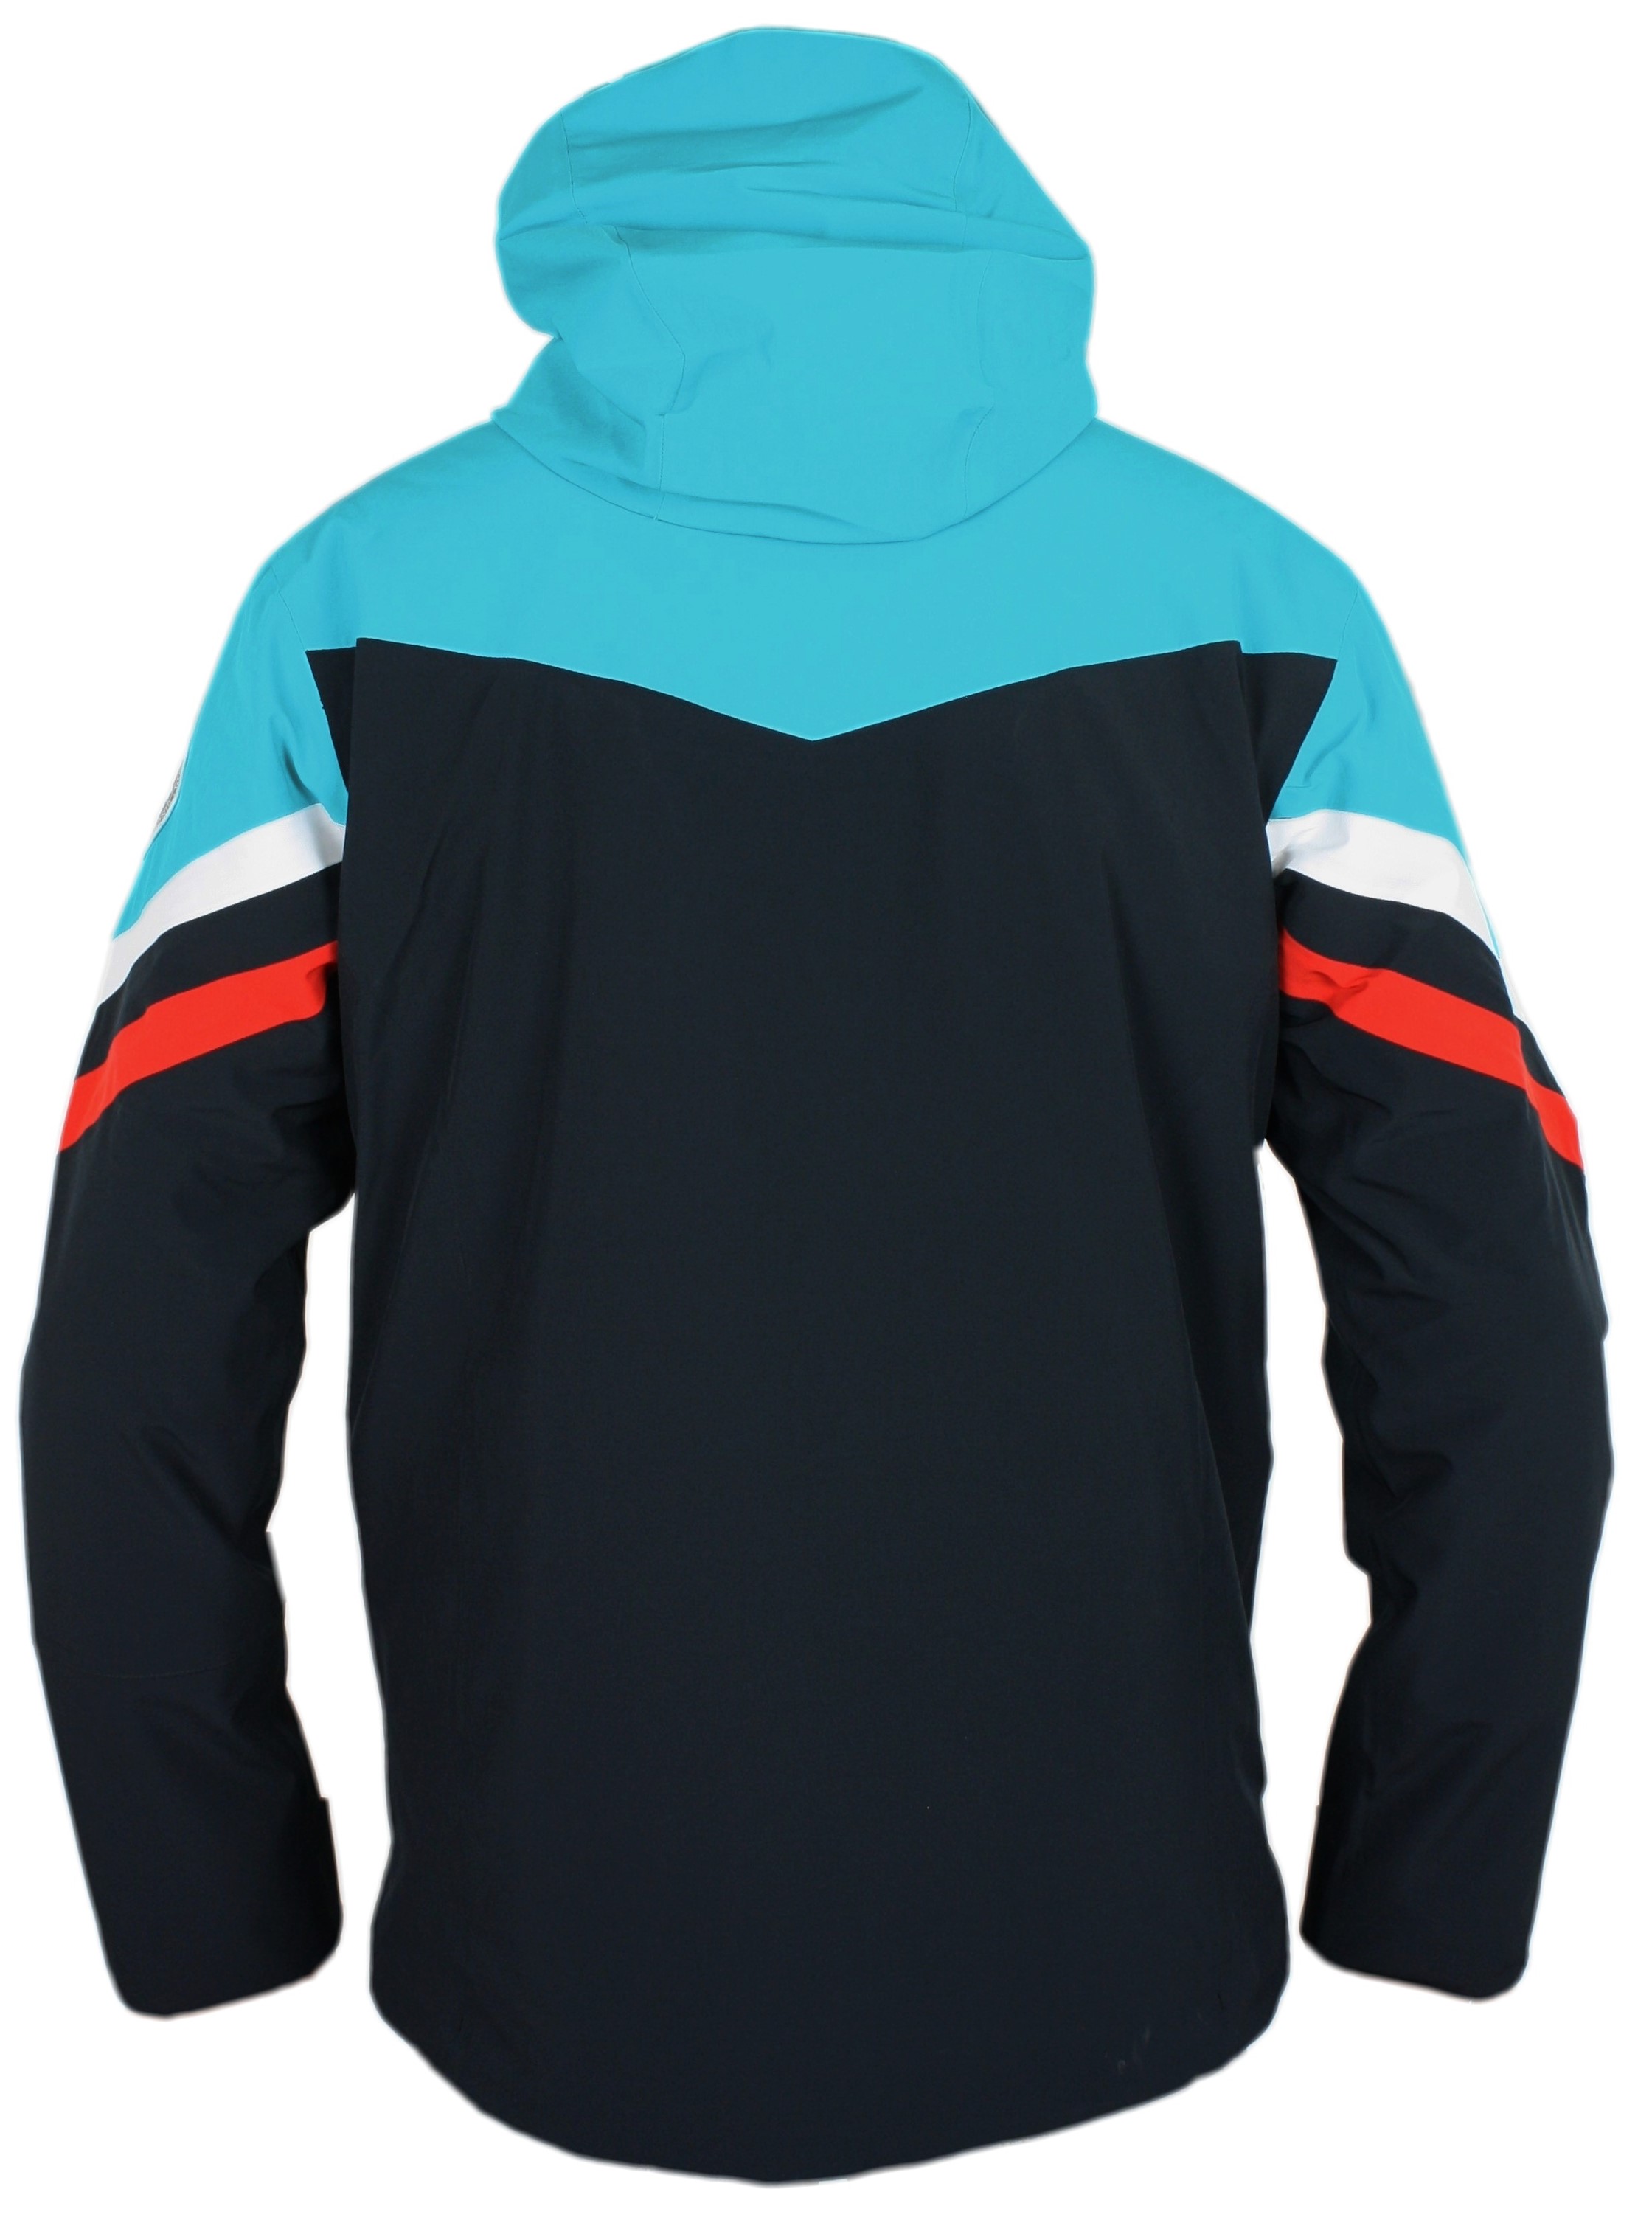 Ski Jacket Kitz, black/light blue